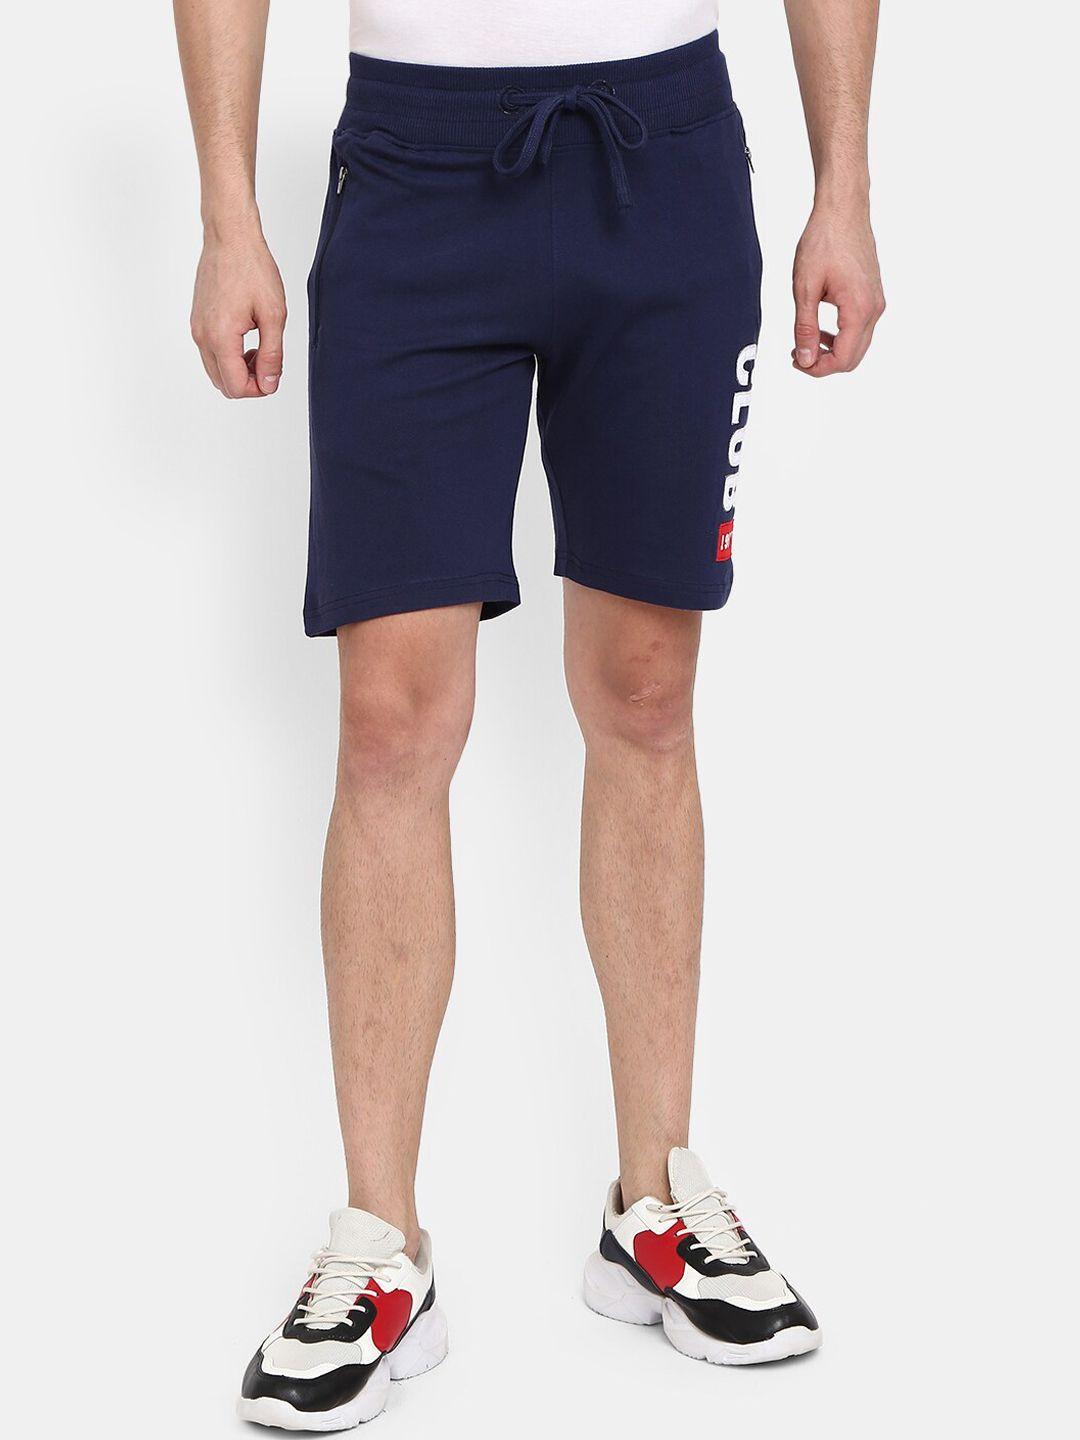 v-mart men navy blue shorts